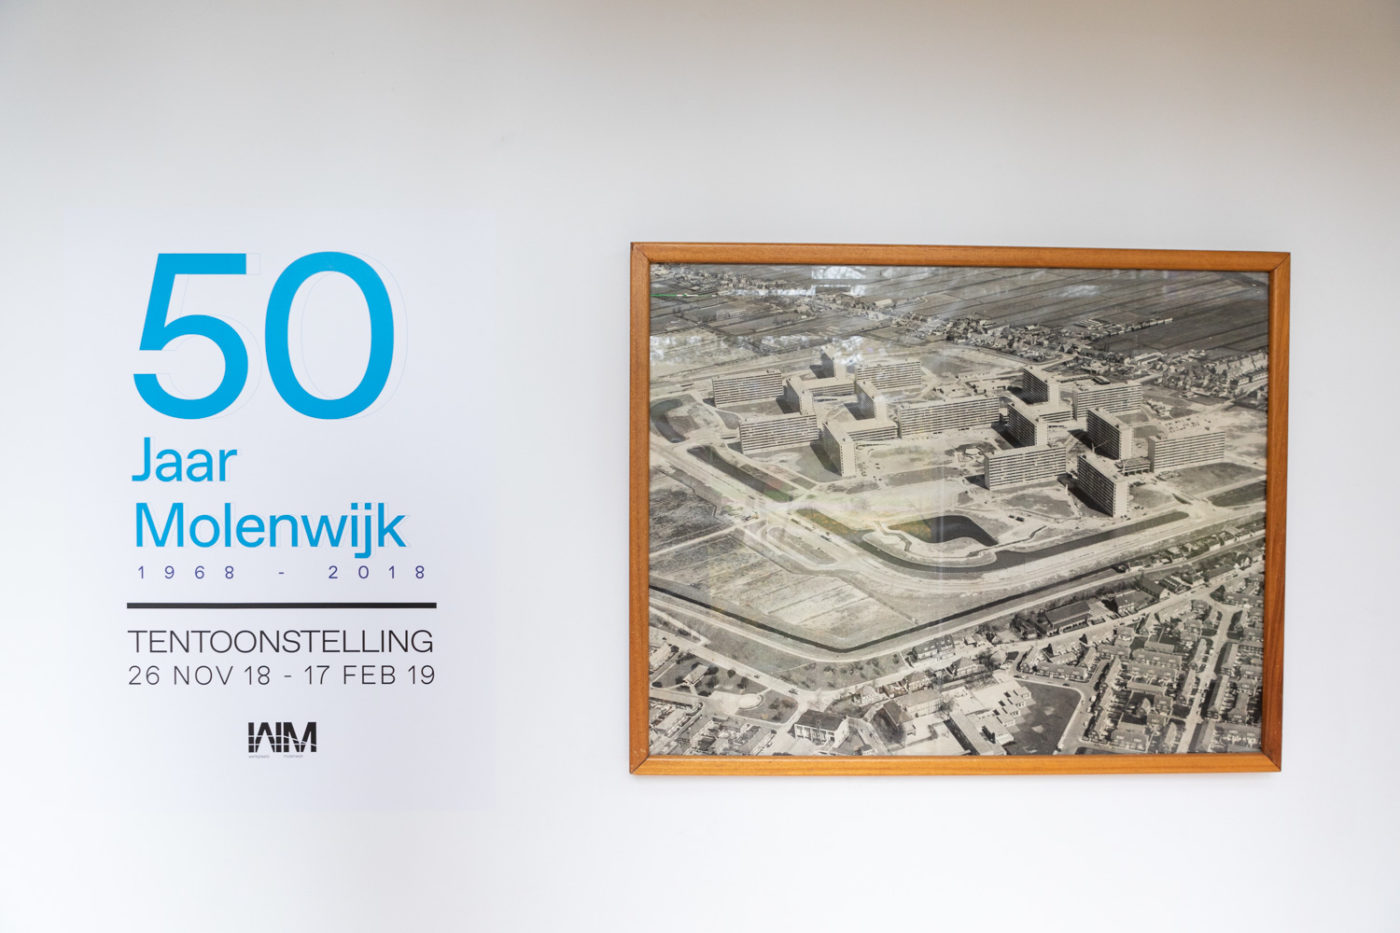 De tweede tentoonstelling in Werkplaats Molenwijk 26 nov 2018 - 17 feb 2019), 50 Jaar Molenwijk. In samenwerking met Florian Braakman.